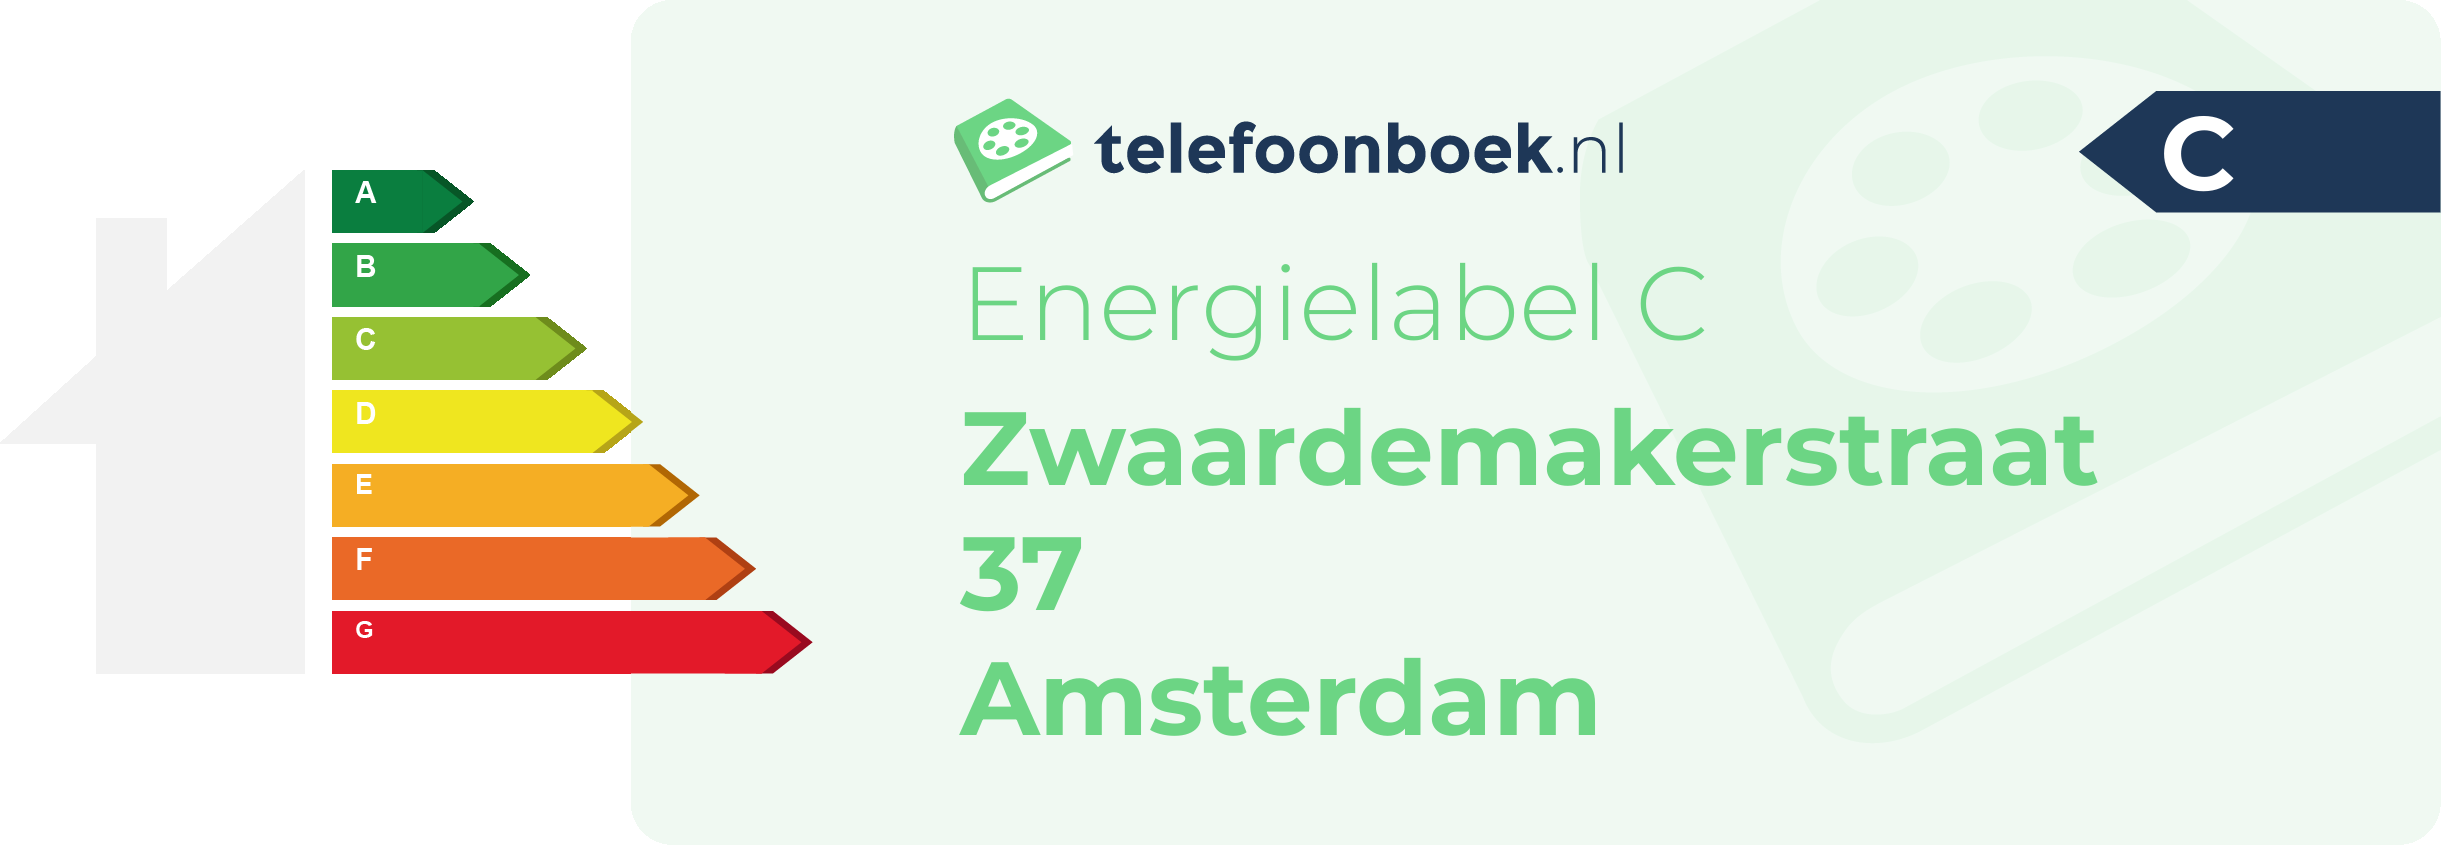 Energielabel Zwaardemakerstraat 37 Amsterdam